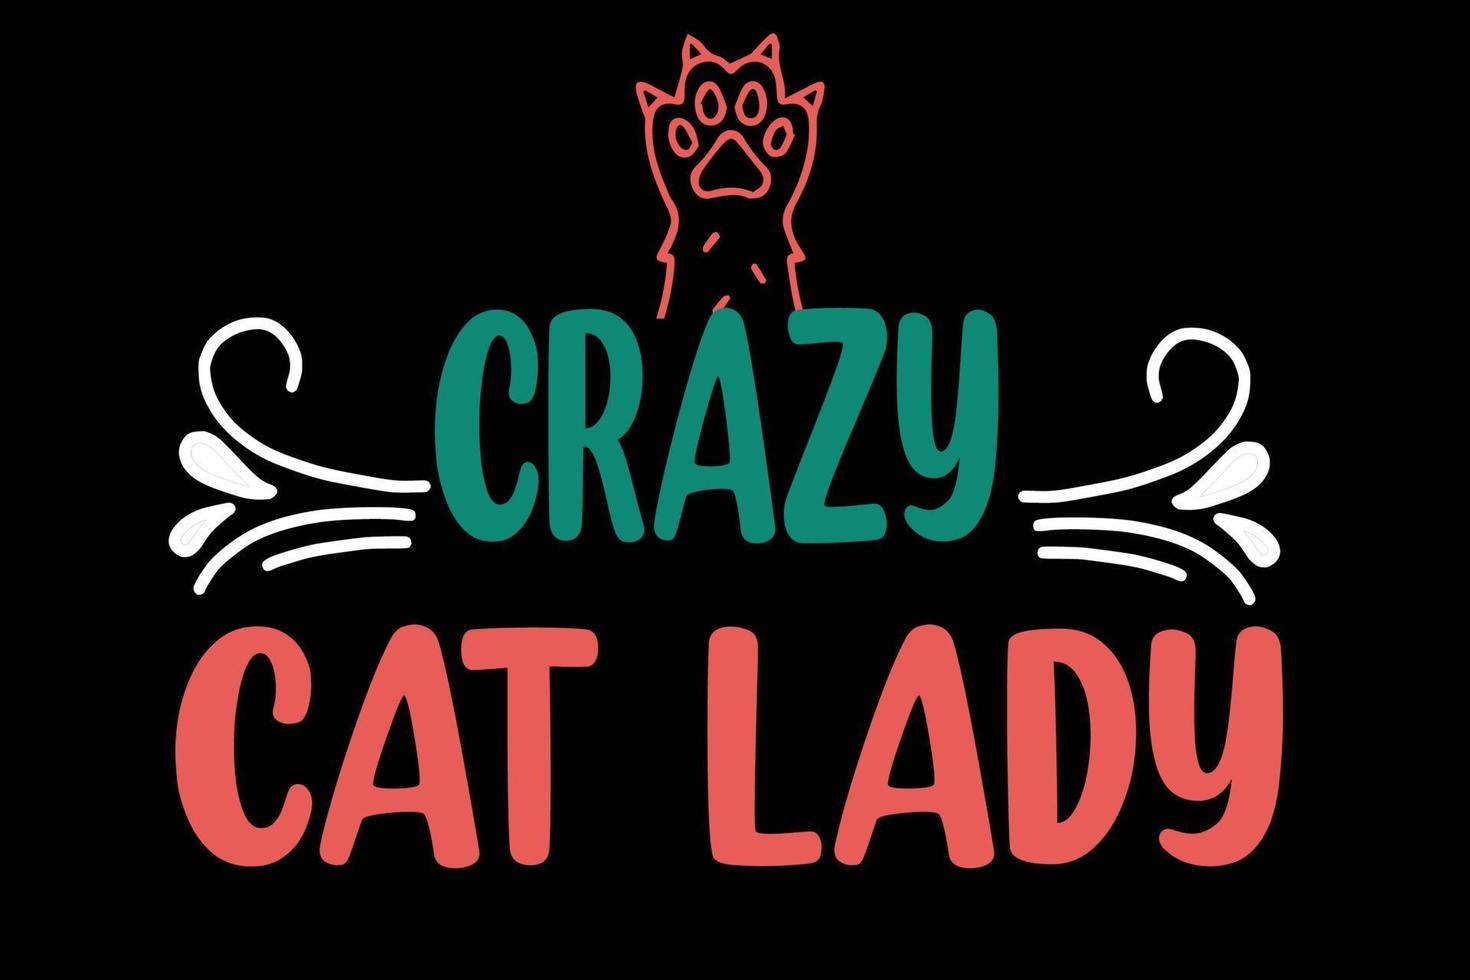 crazy cat lady t shirt vector